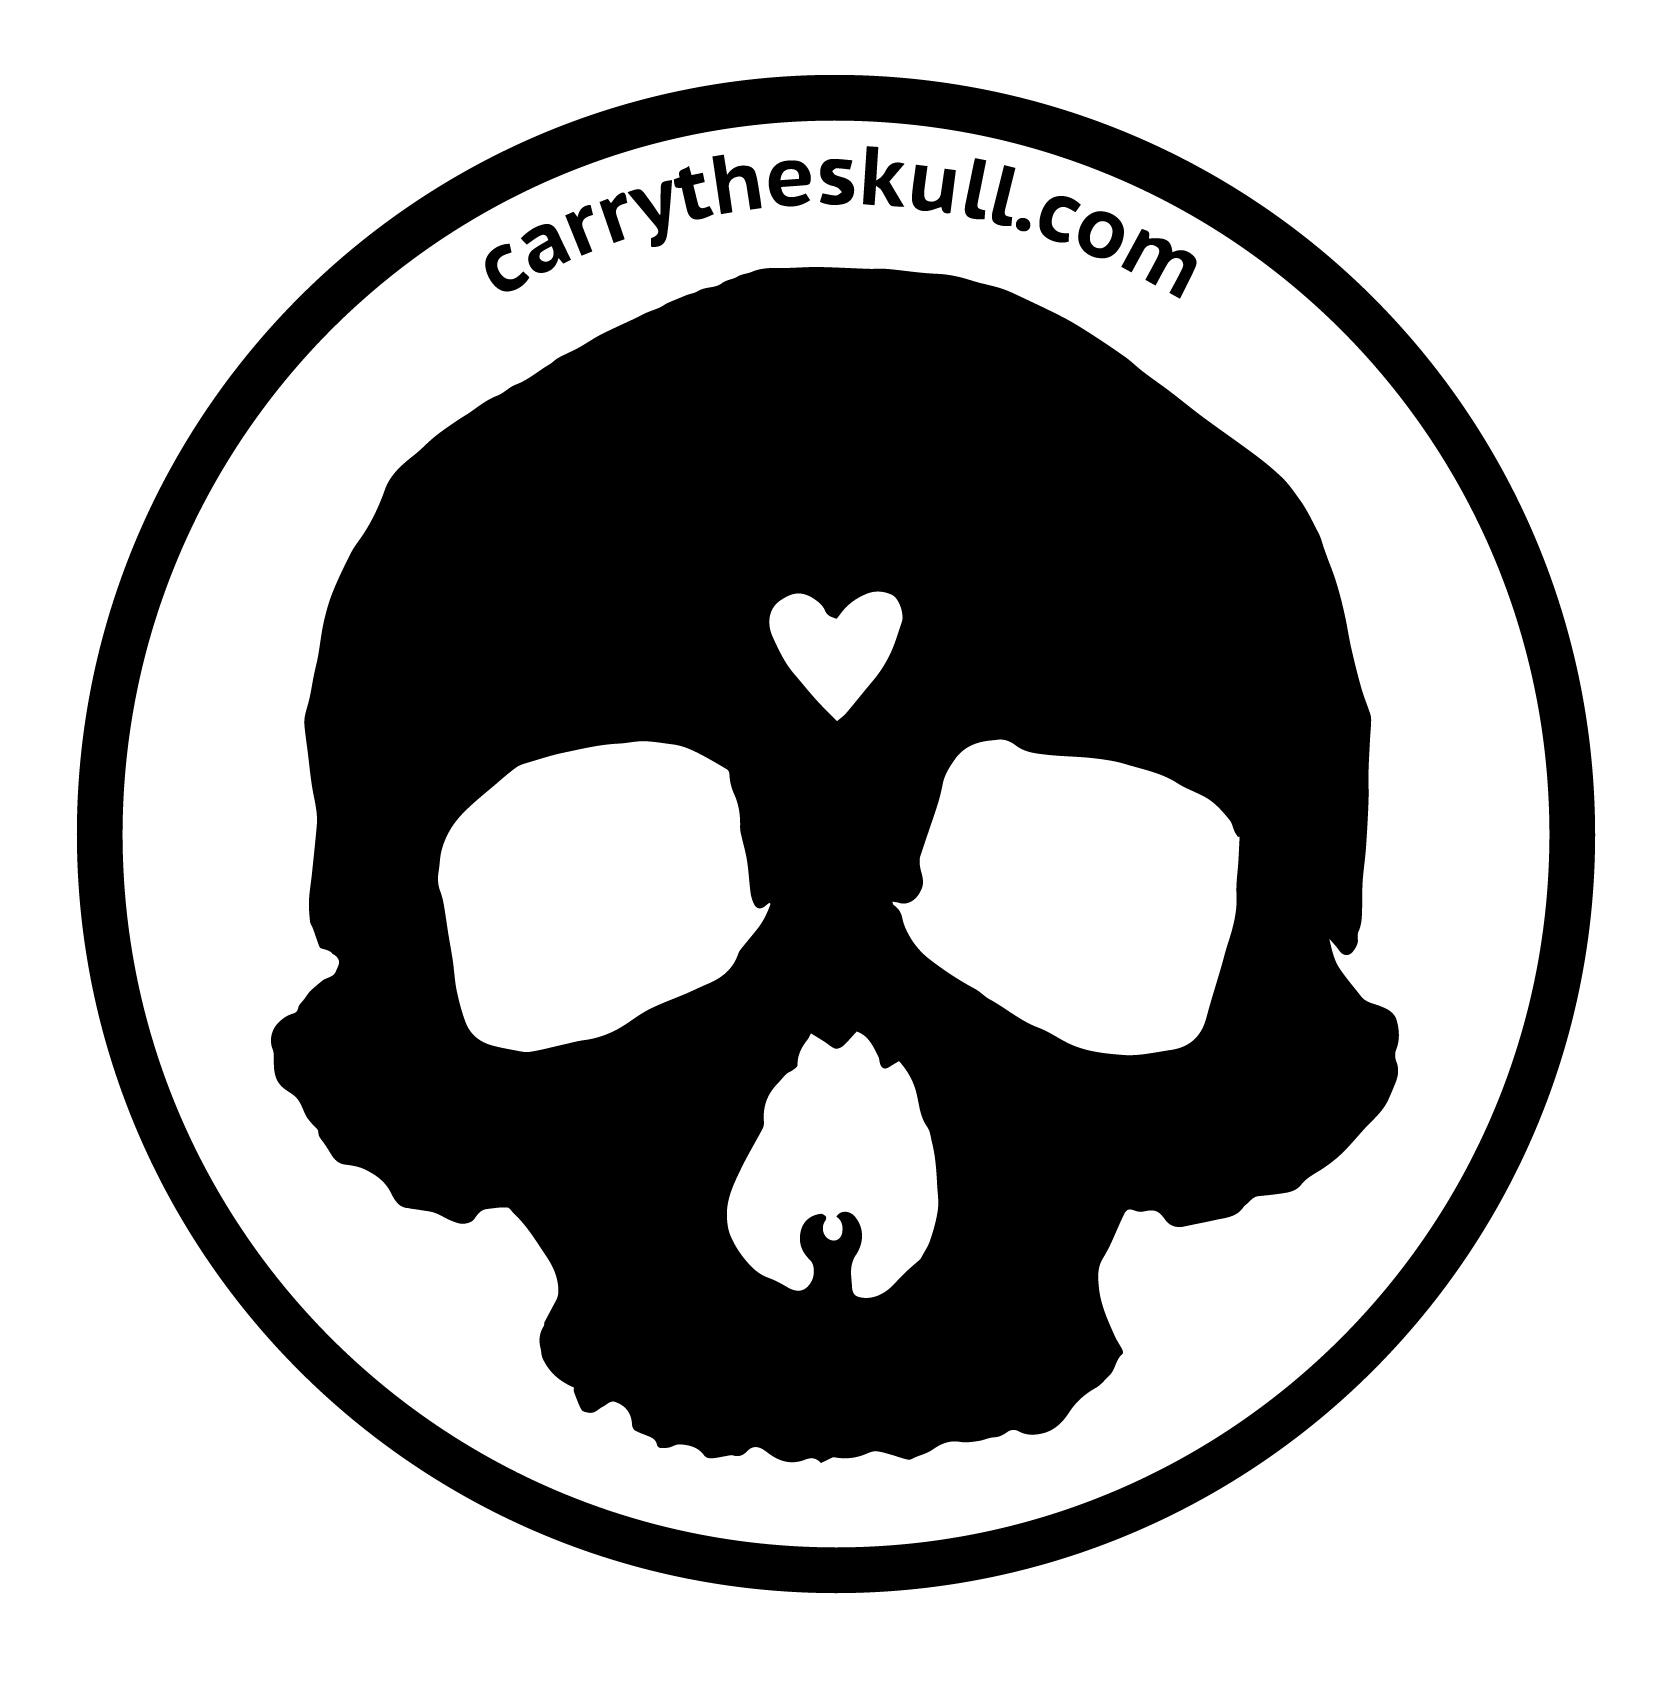 Carry-the-skull-logo